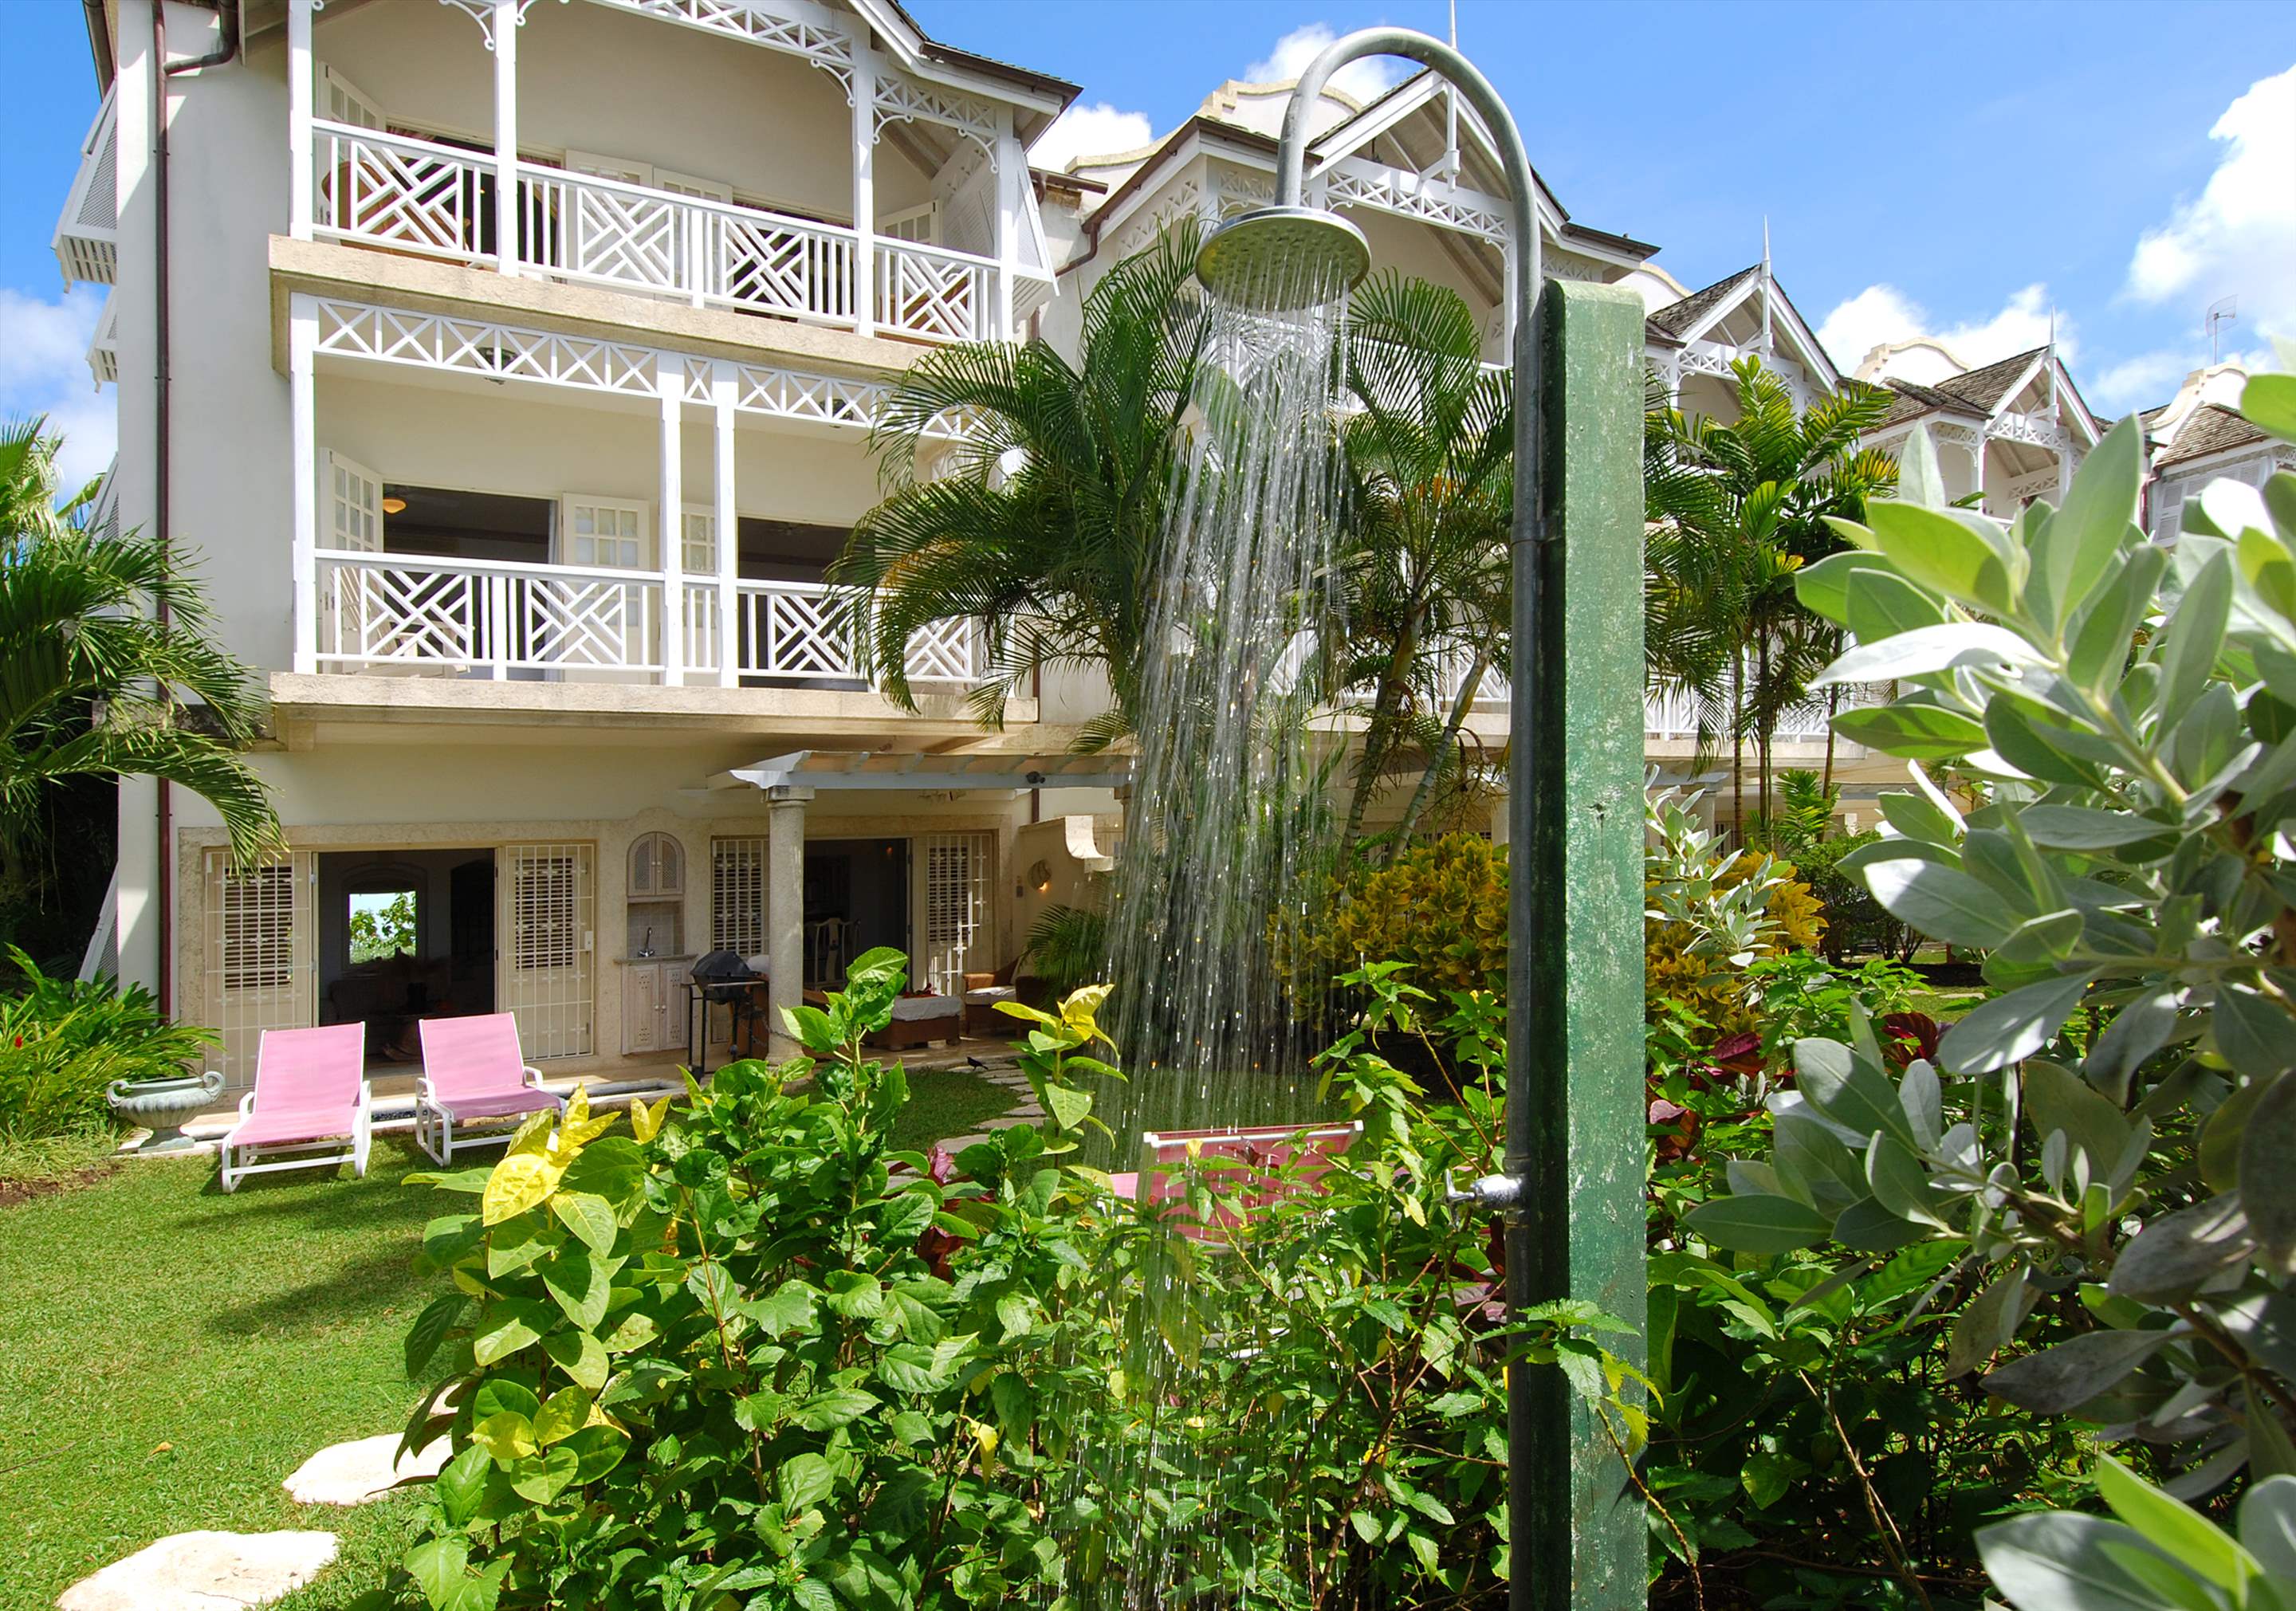 Fathom's End, 3 bedroom villa in St. James & West Coast, Barbados Photo #16